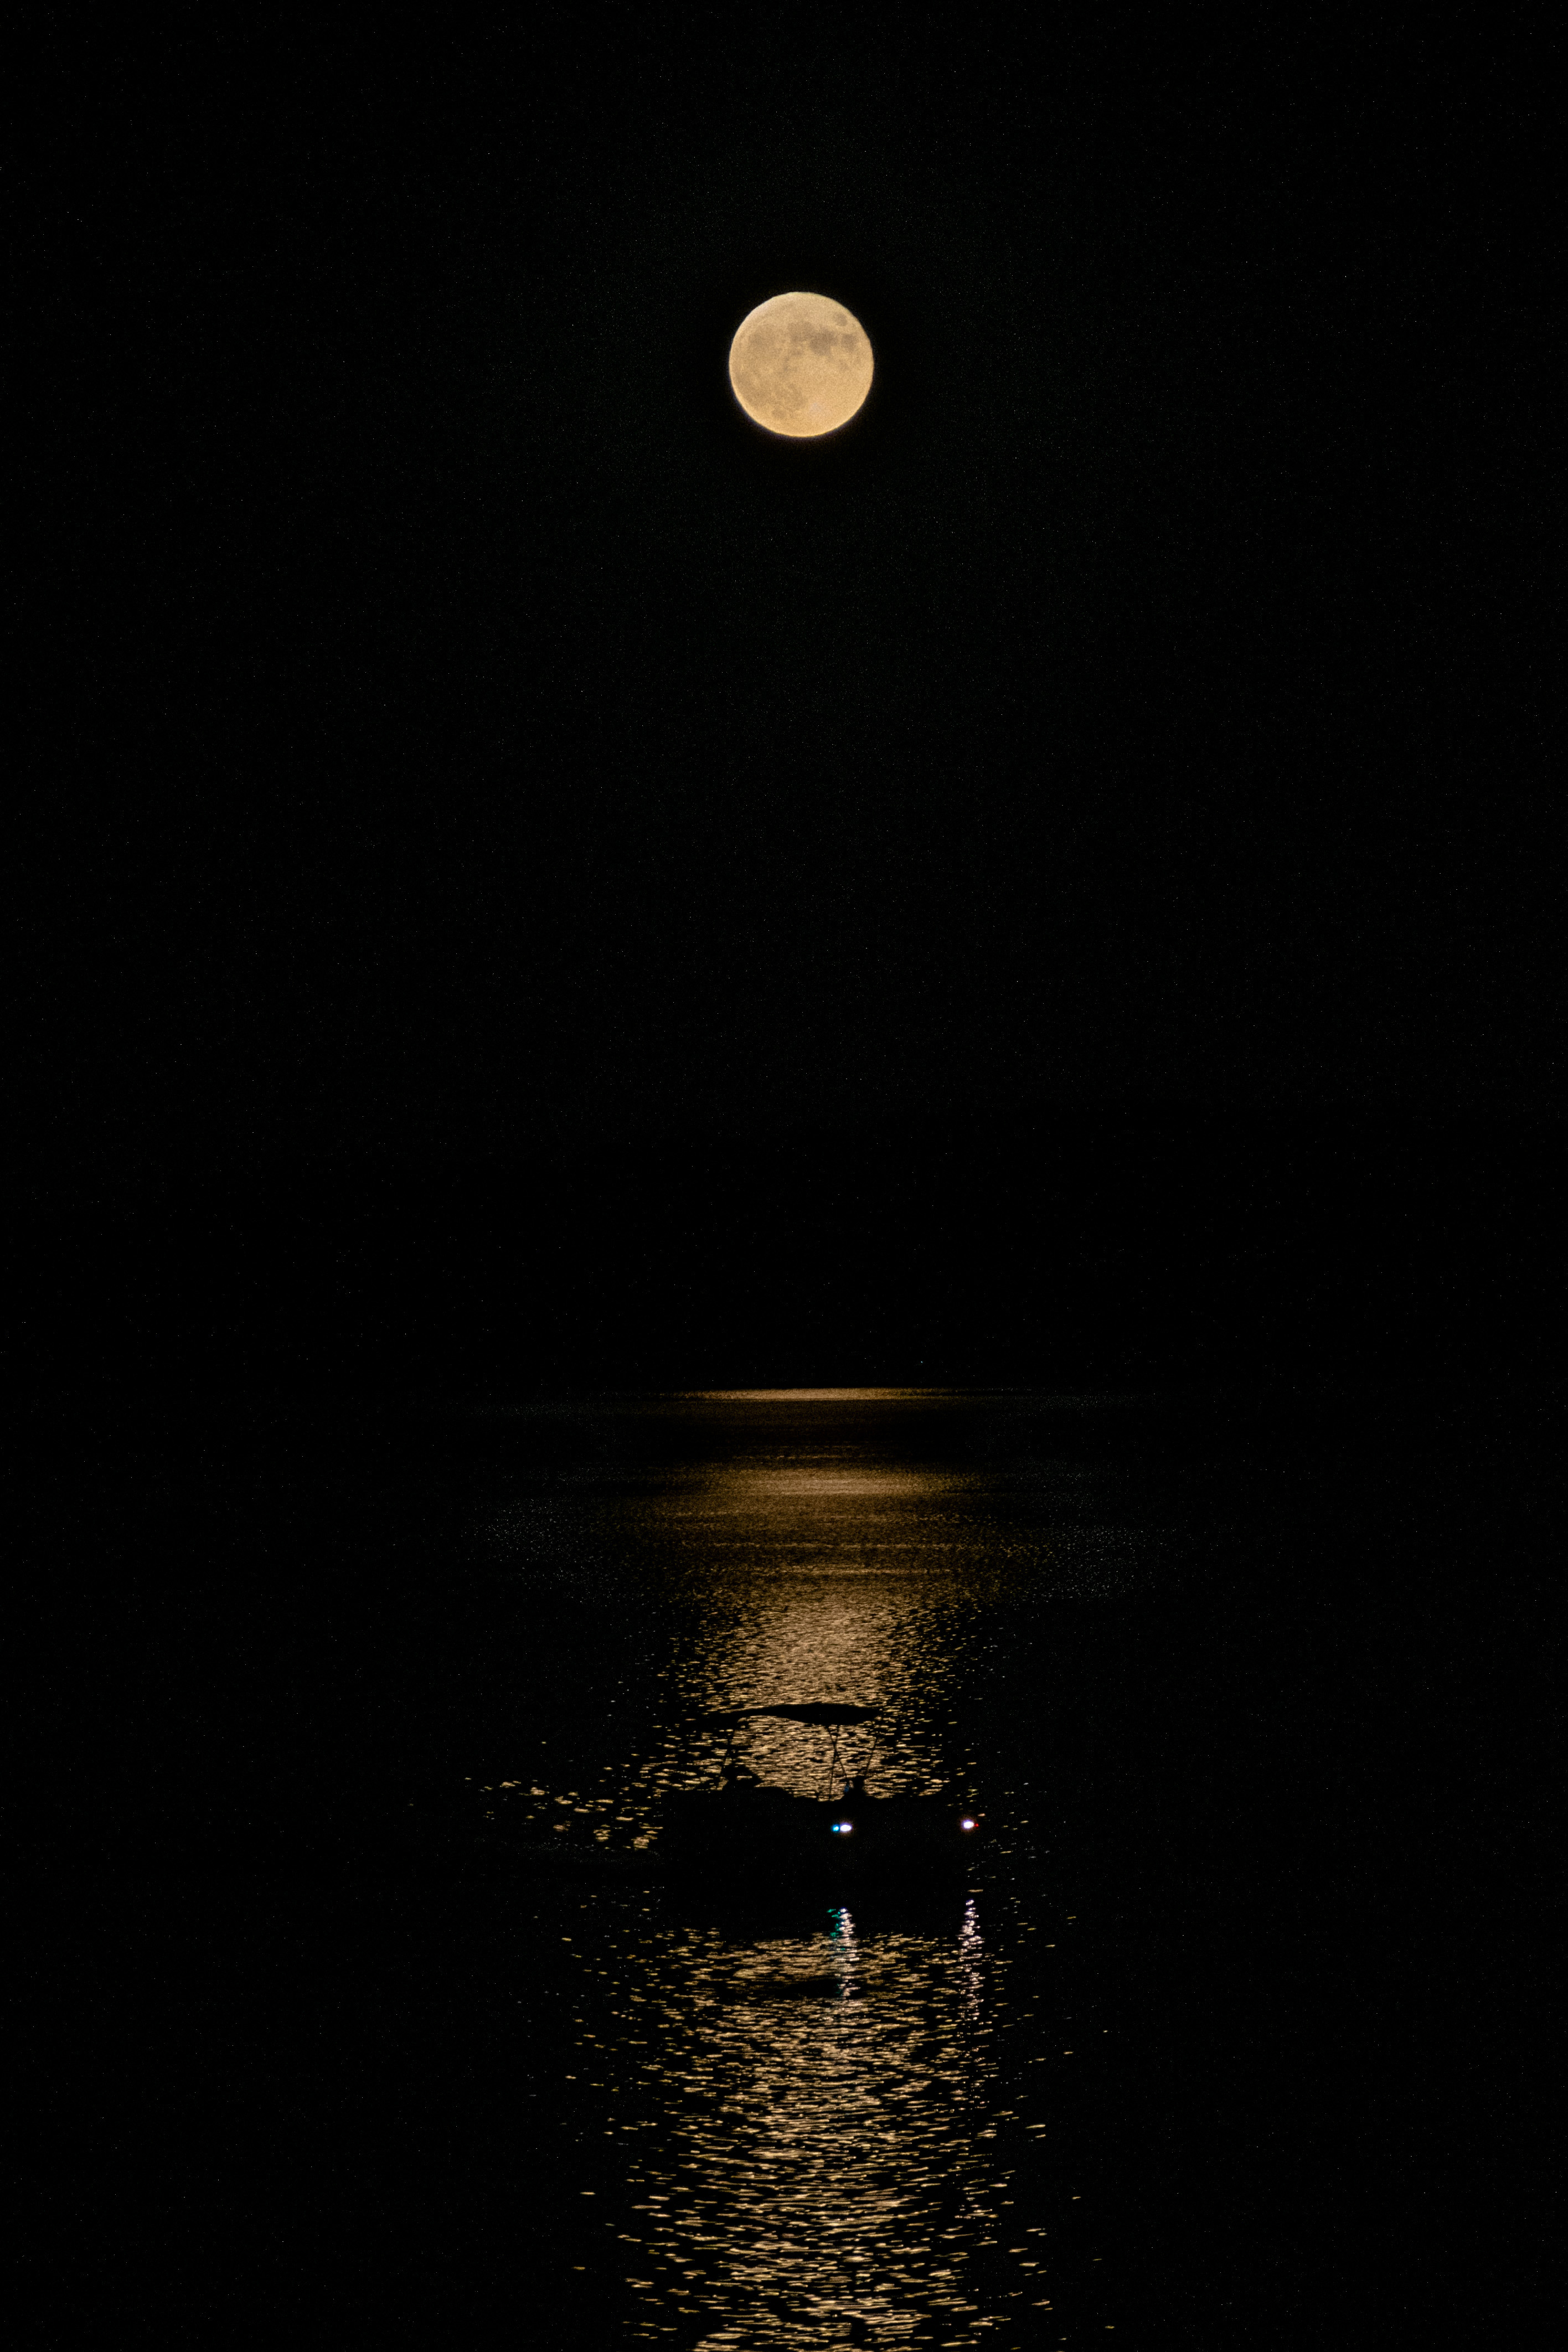 Una luna llena cuelga en un cielo negro, mientras un barco pasa junto a su reflejo alargado en un poco de agua.